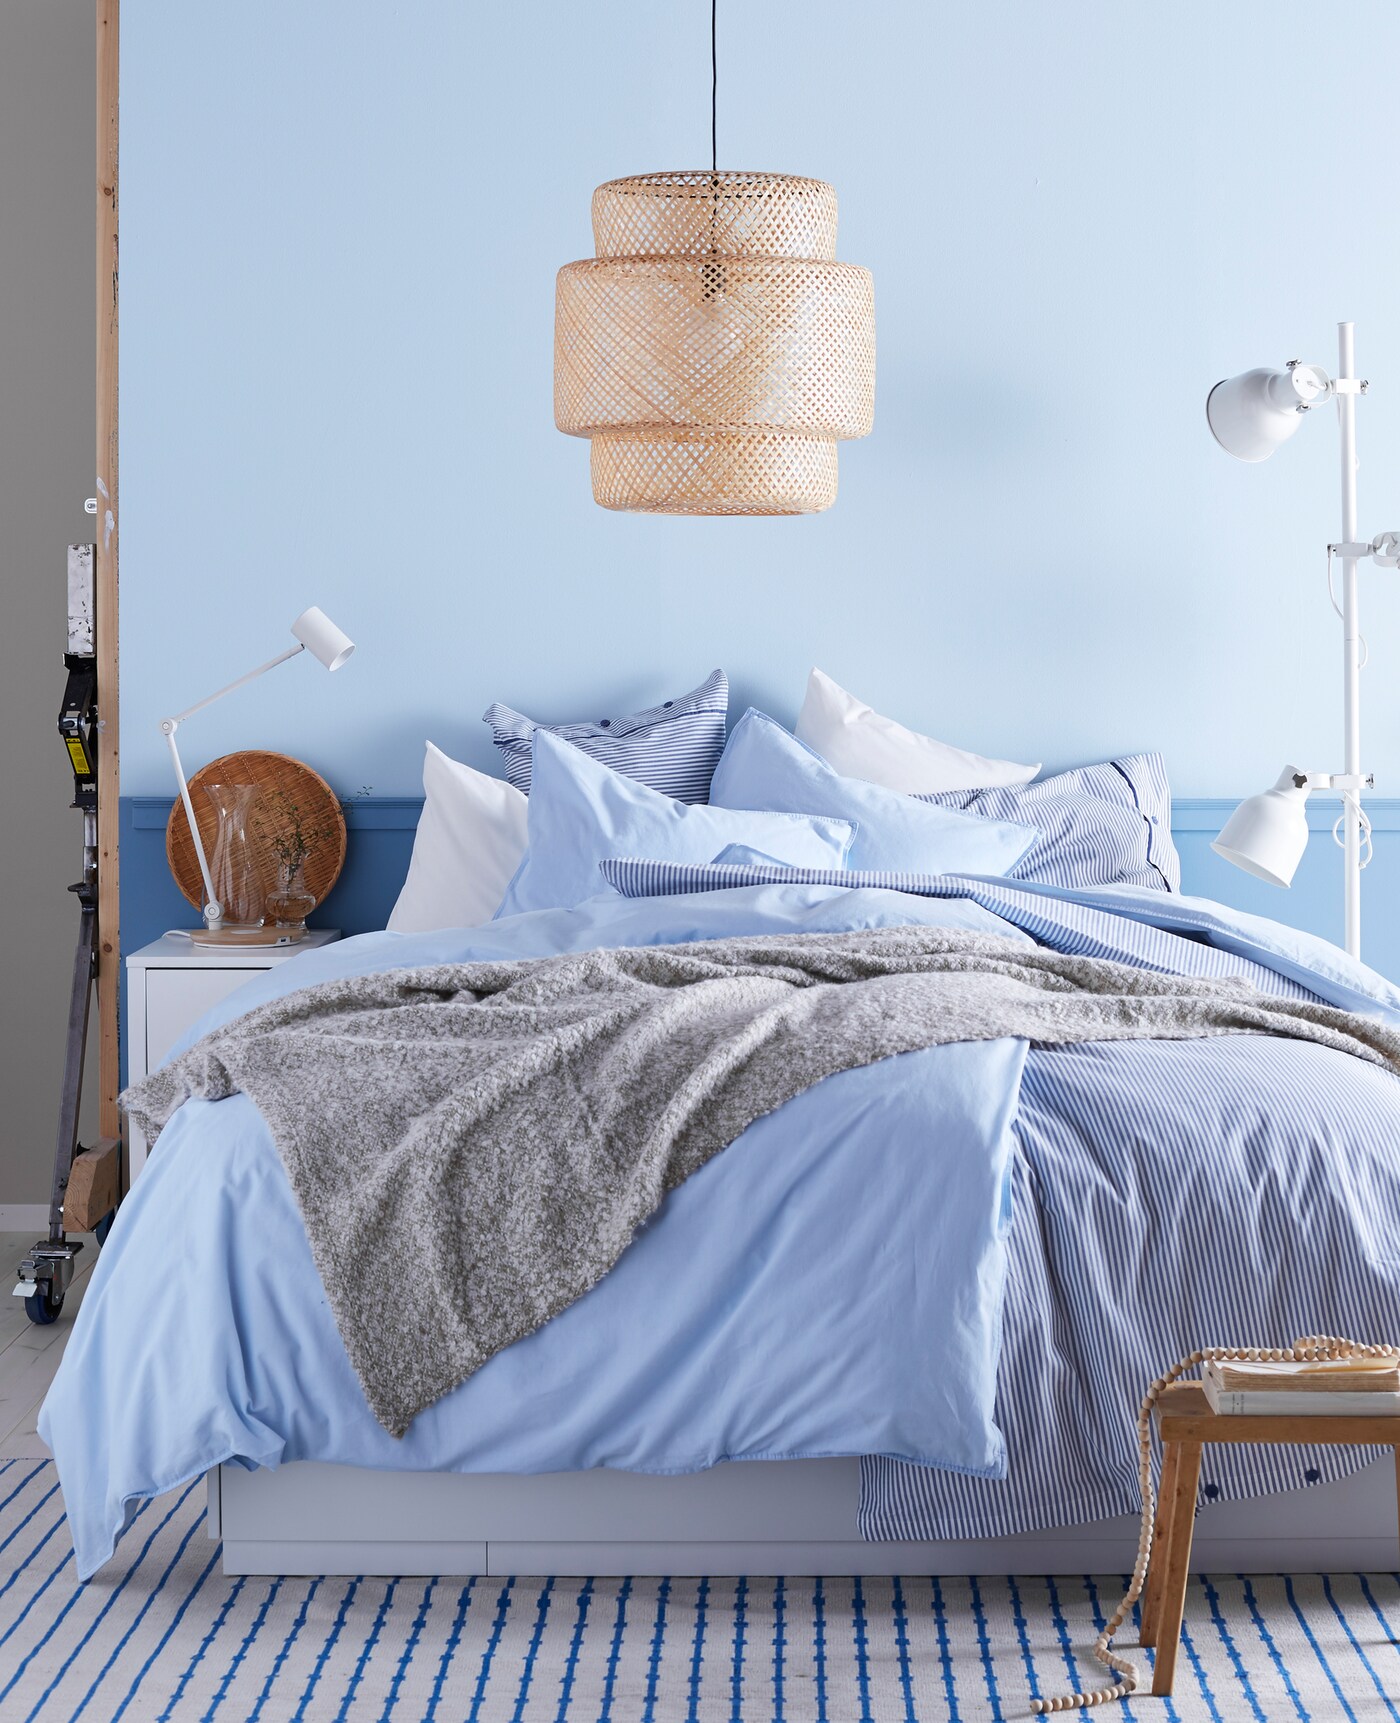 Quarto de casal com parede pintada de azul claro. A cama possui mantas e cobertores na cor azul.